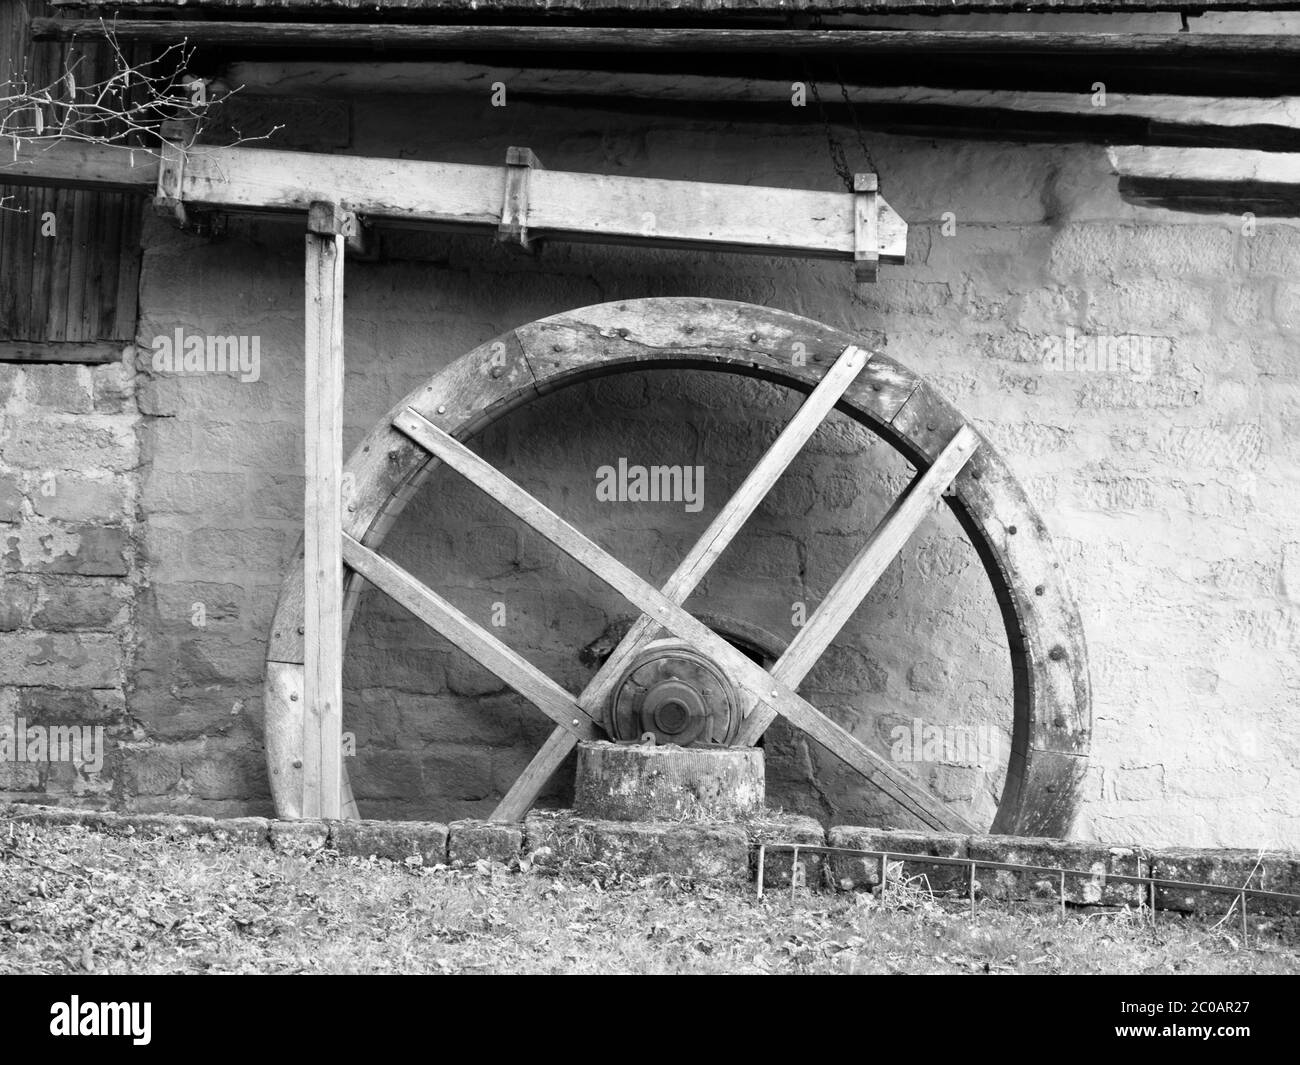 Alte Mühle Wasserrad ohne Wasser, keine Bewegung, schwarz-weiß Bild Stockfoto